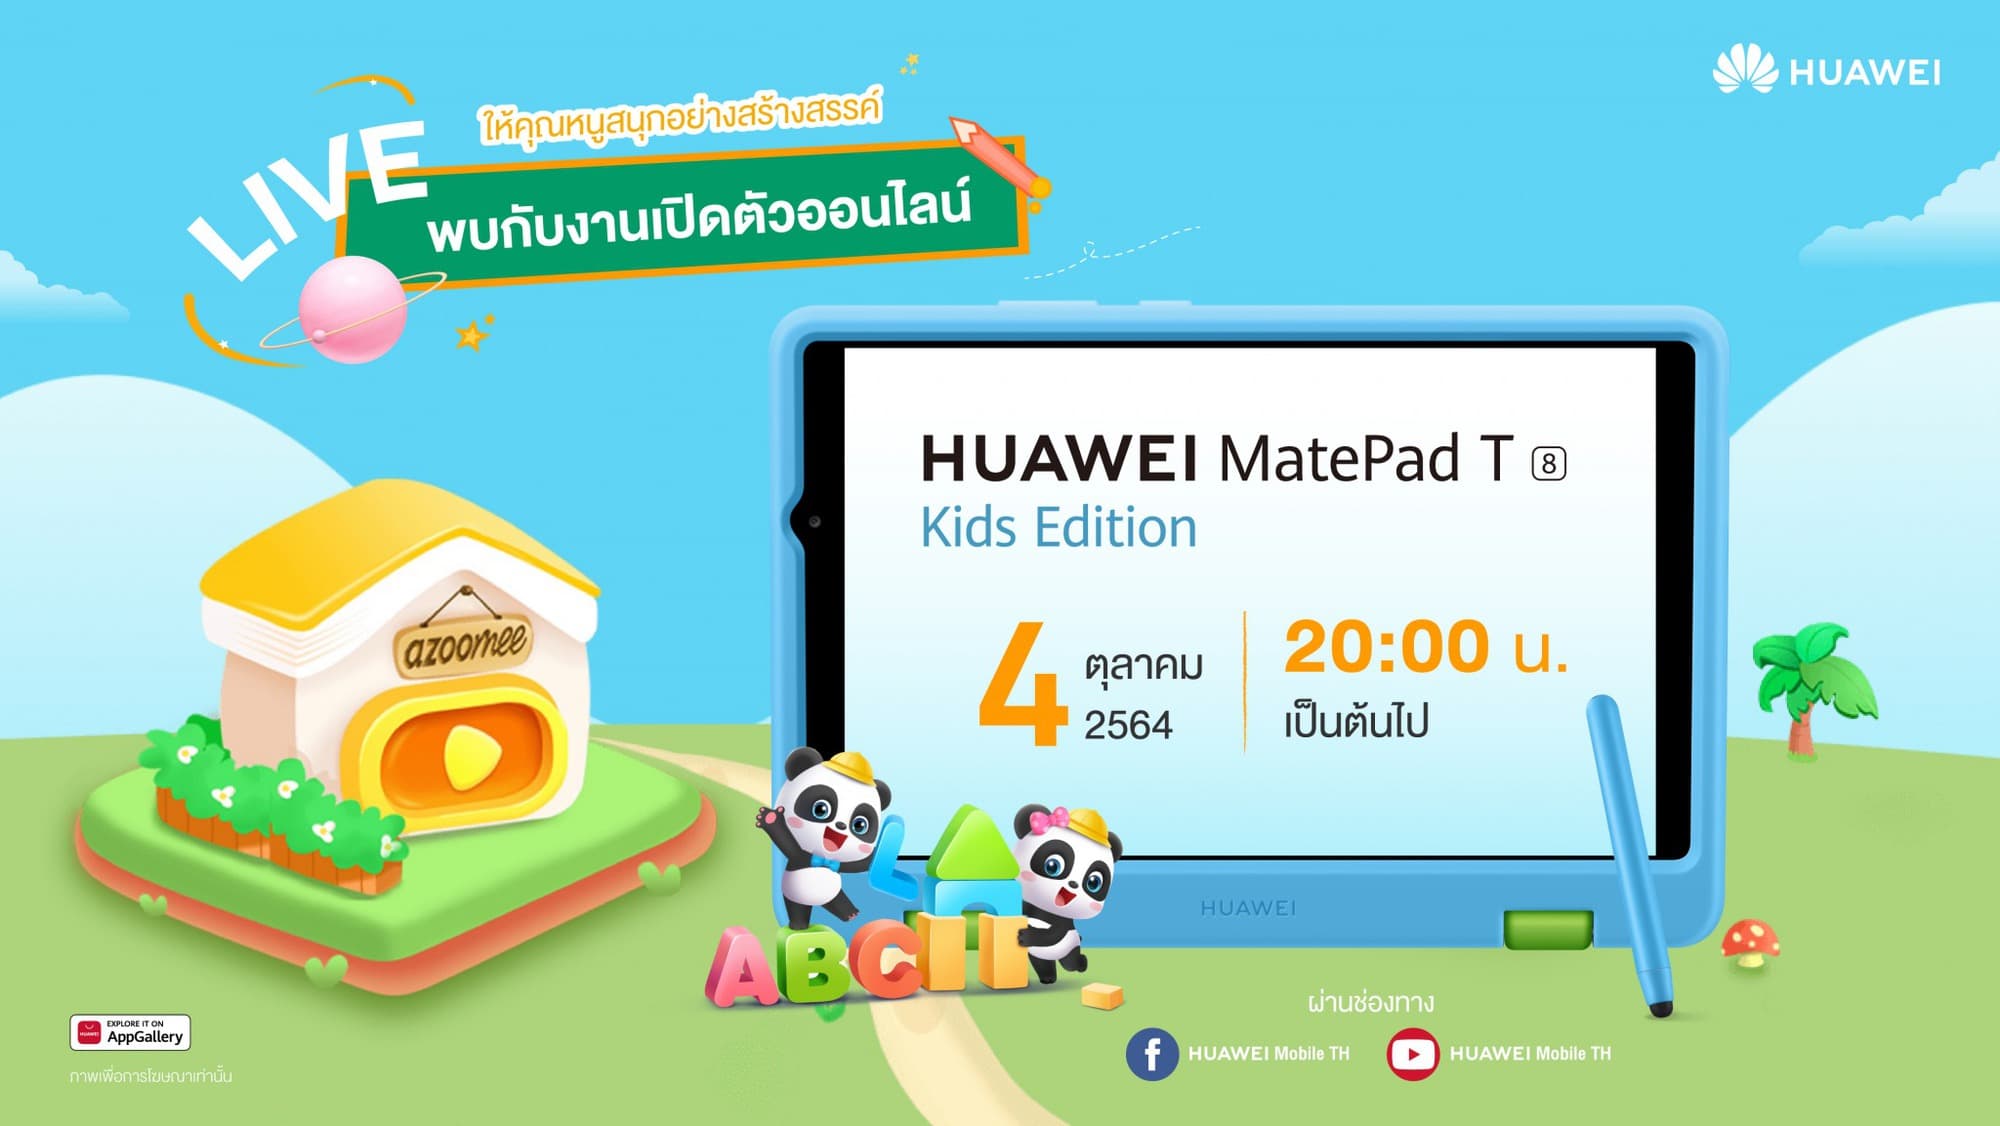 ครั้งแรกของการรุกตลาดผลิตภัณฑ์เด็กเต็มตัว กับแท็บเล็ต HUAWEI MatePad T 8 Kids Edition รุ่นใหม่ล่าสุด! 1